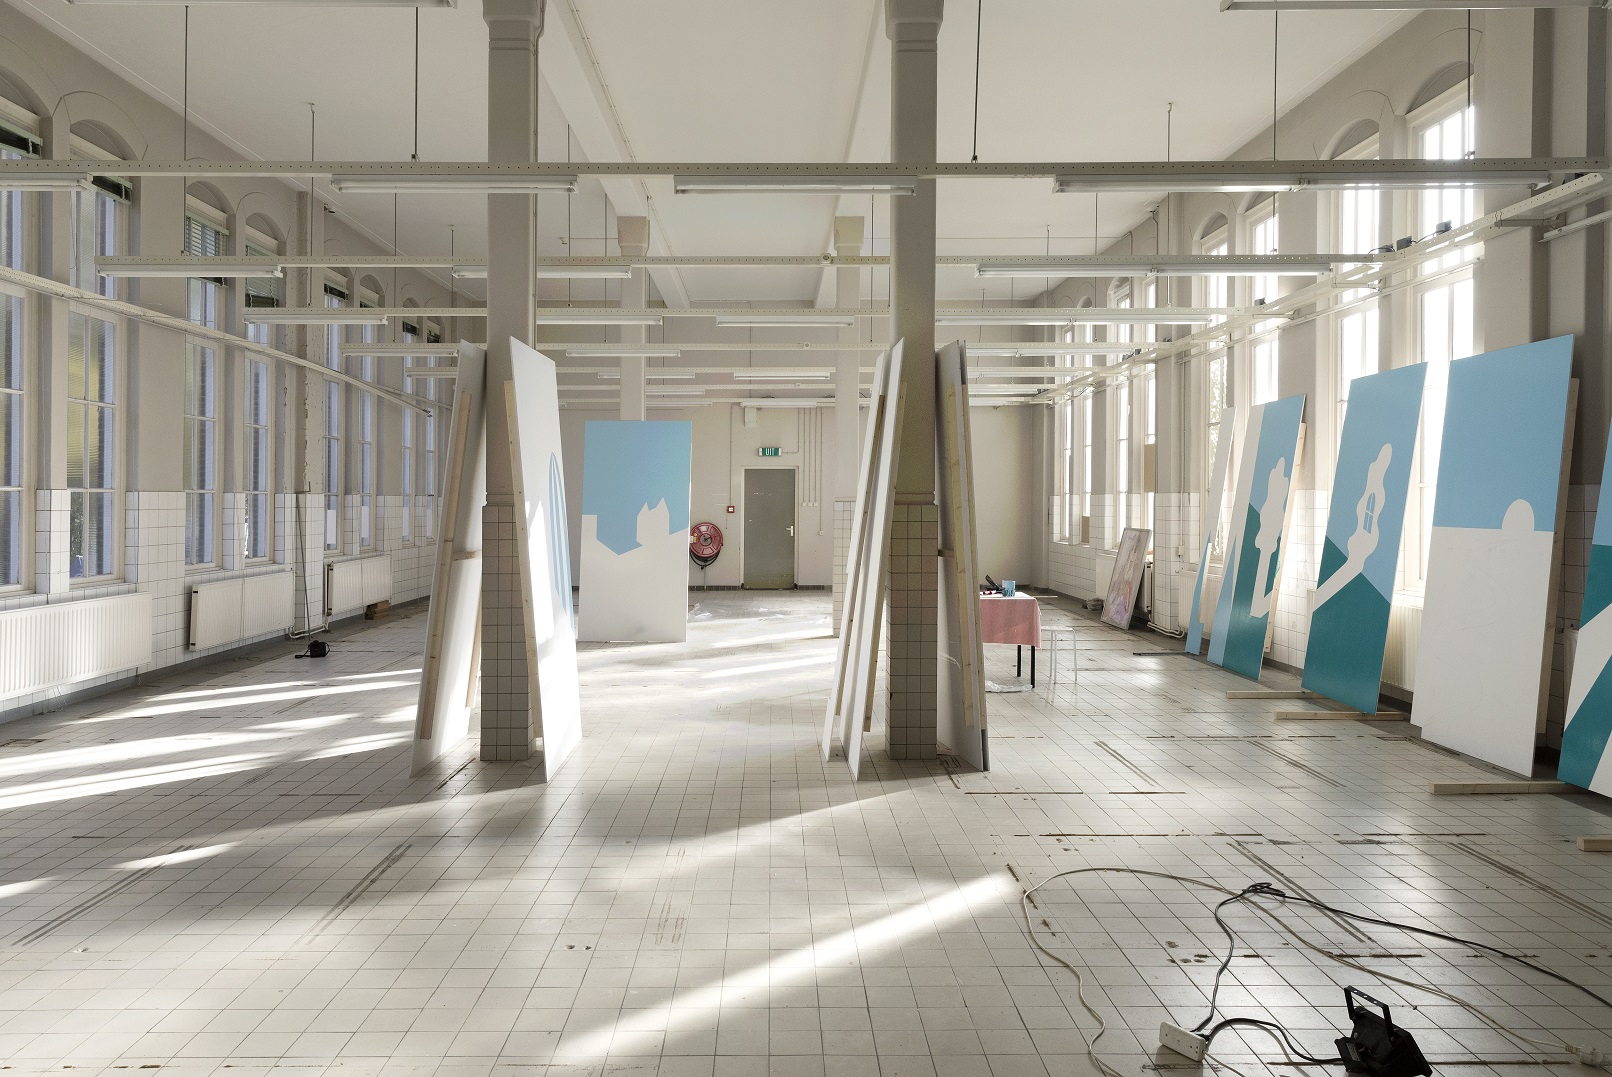 Aafke's werkruimte, met daarin onderdelen van het kunstwerk tijdens het schilderen